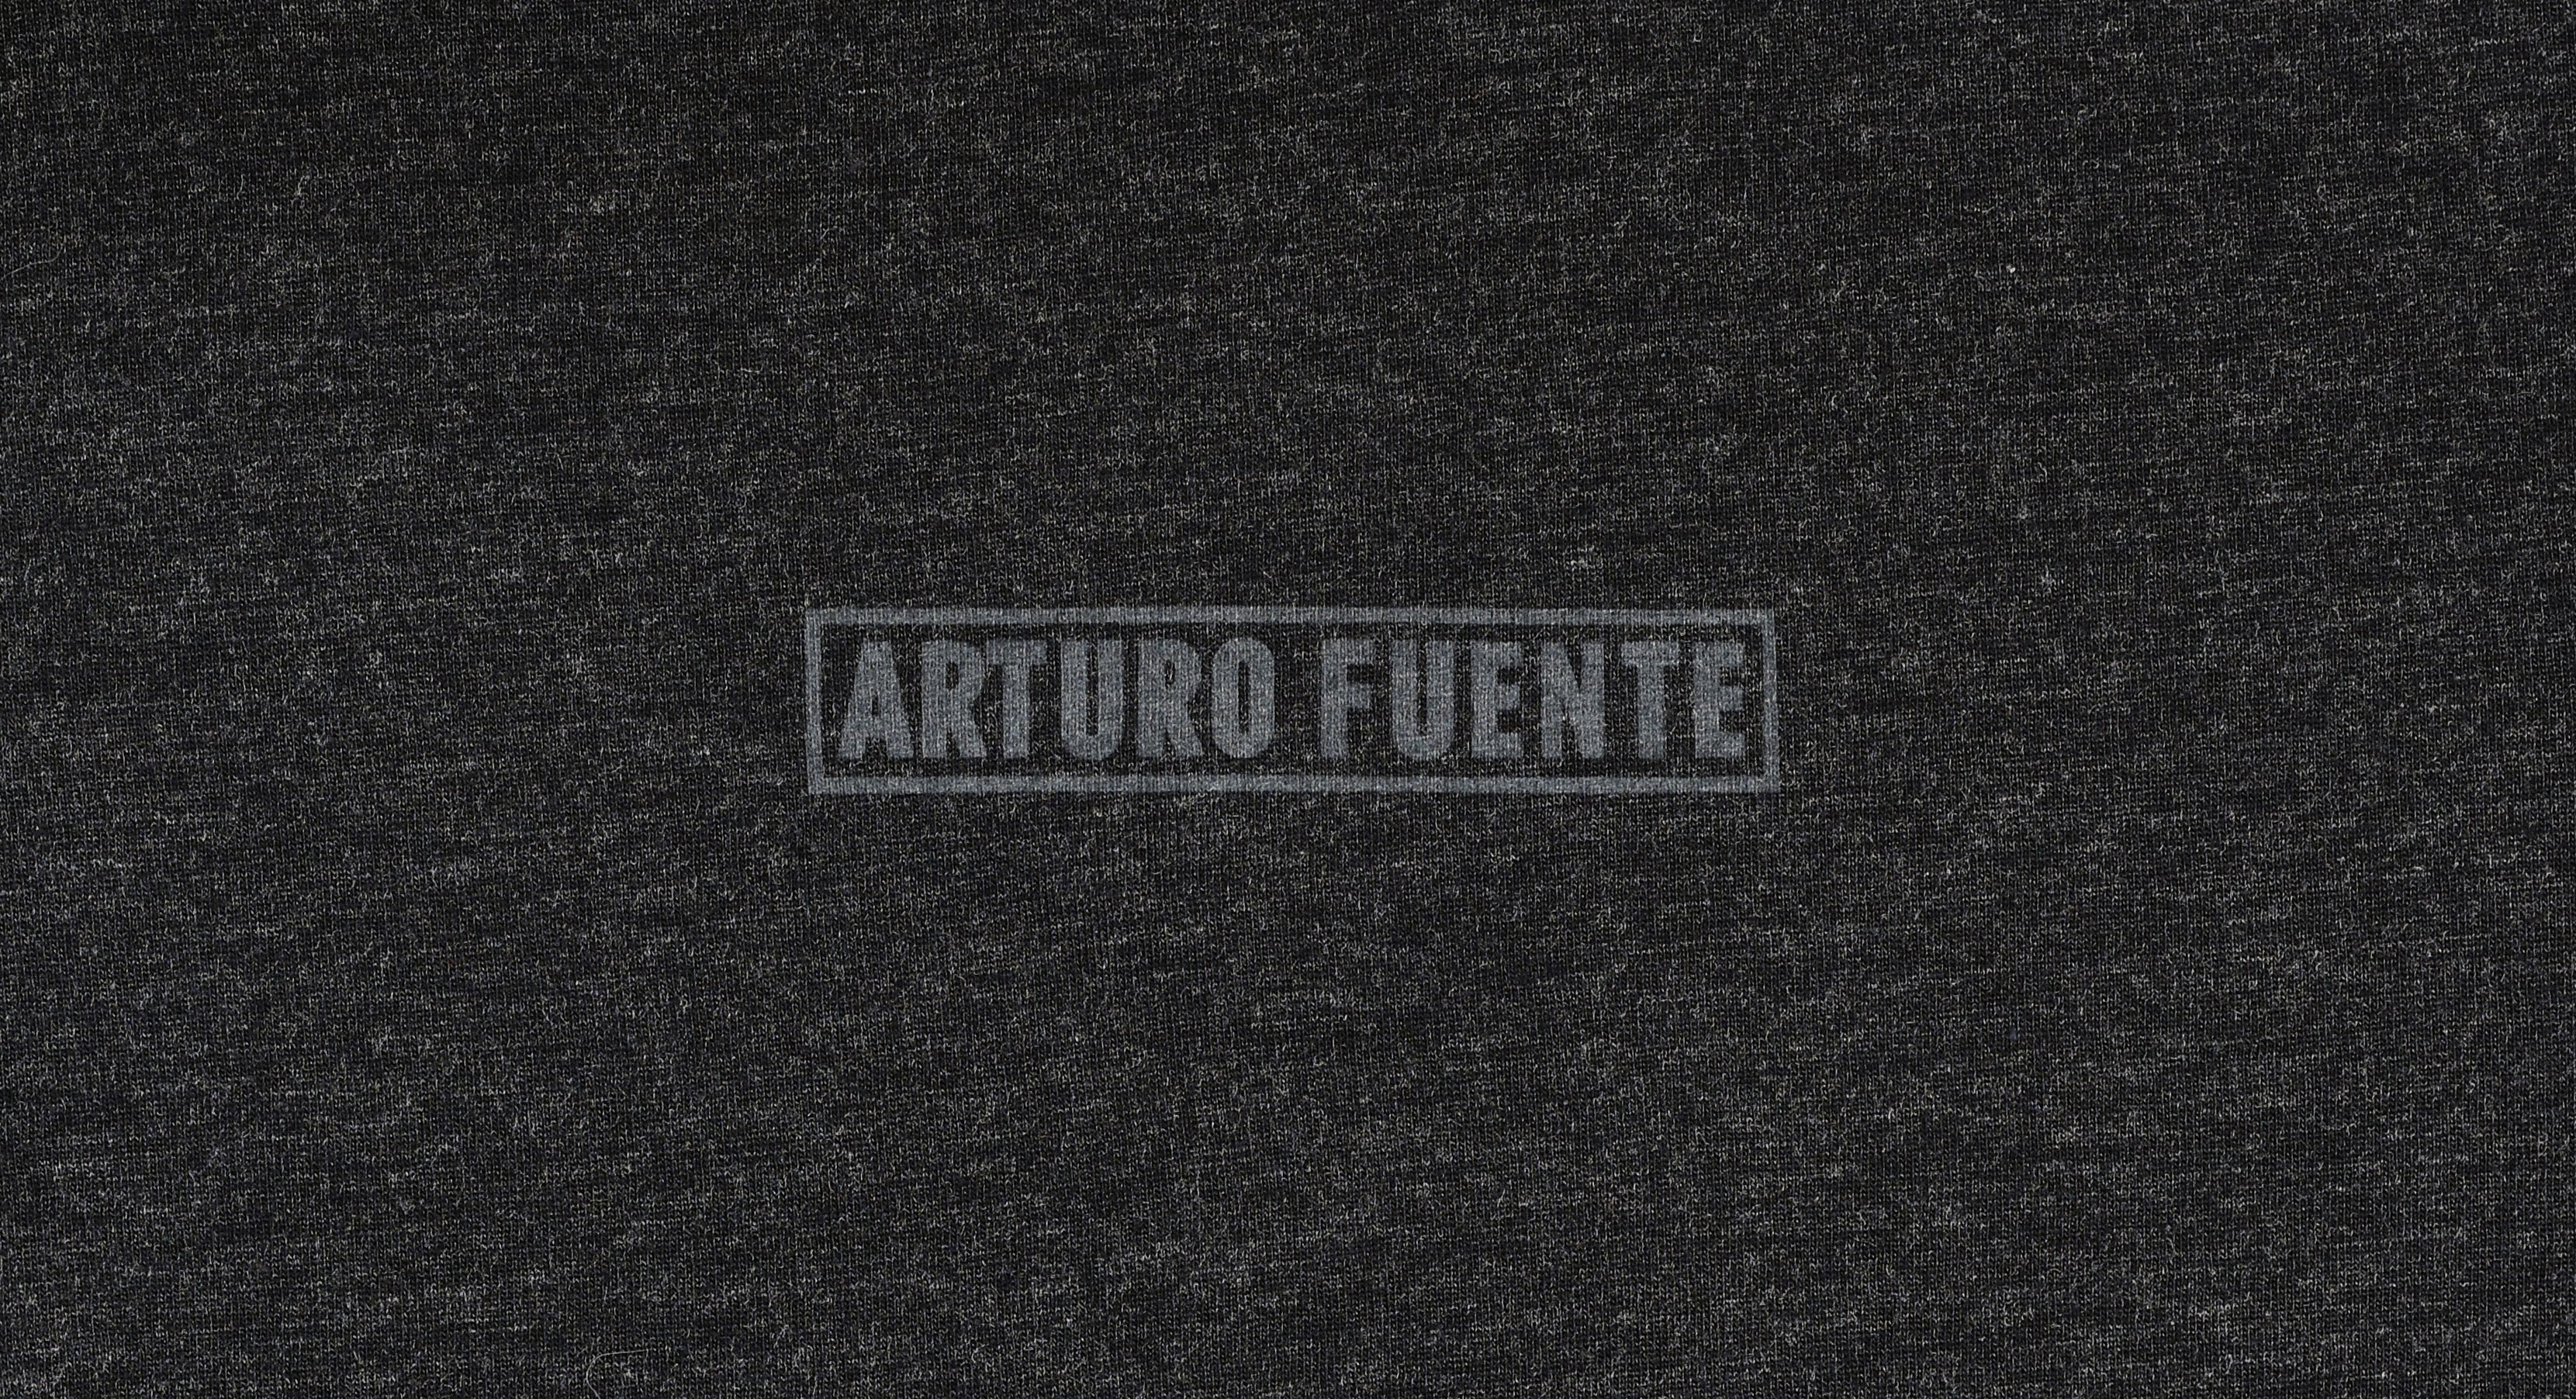 Arturo Fuente Rare Pink Long Sleeve Comfy Black Tee